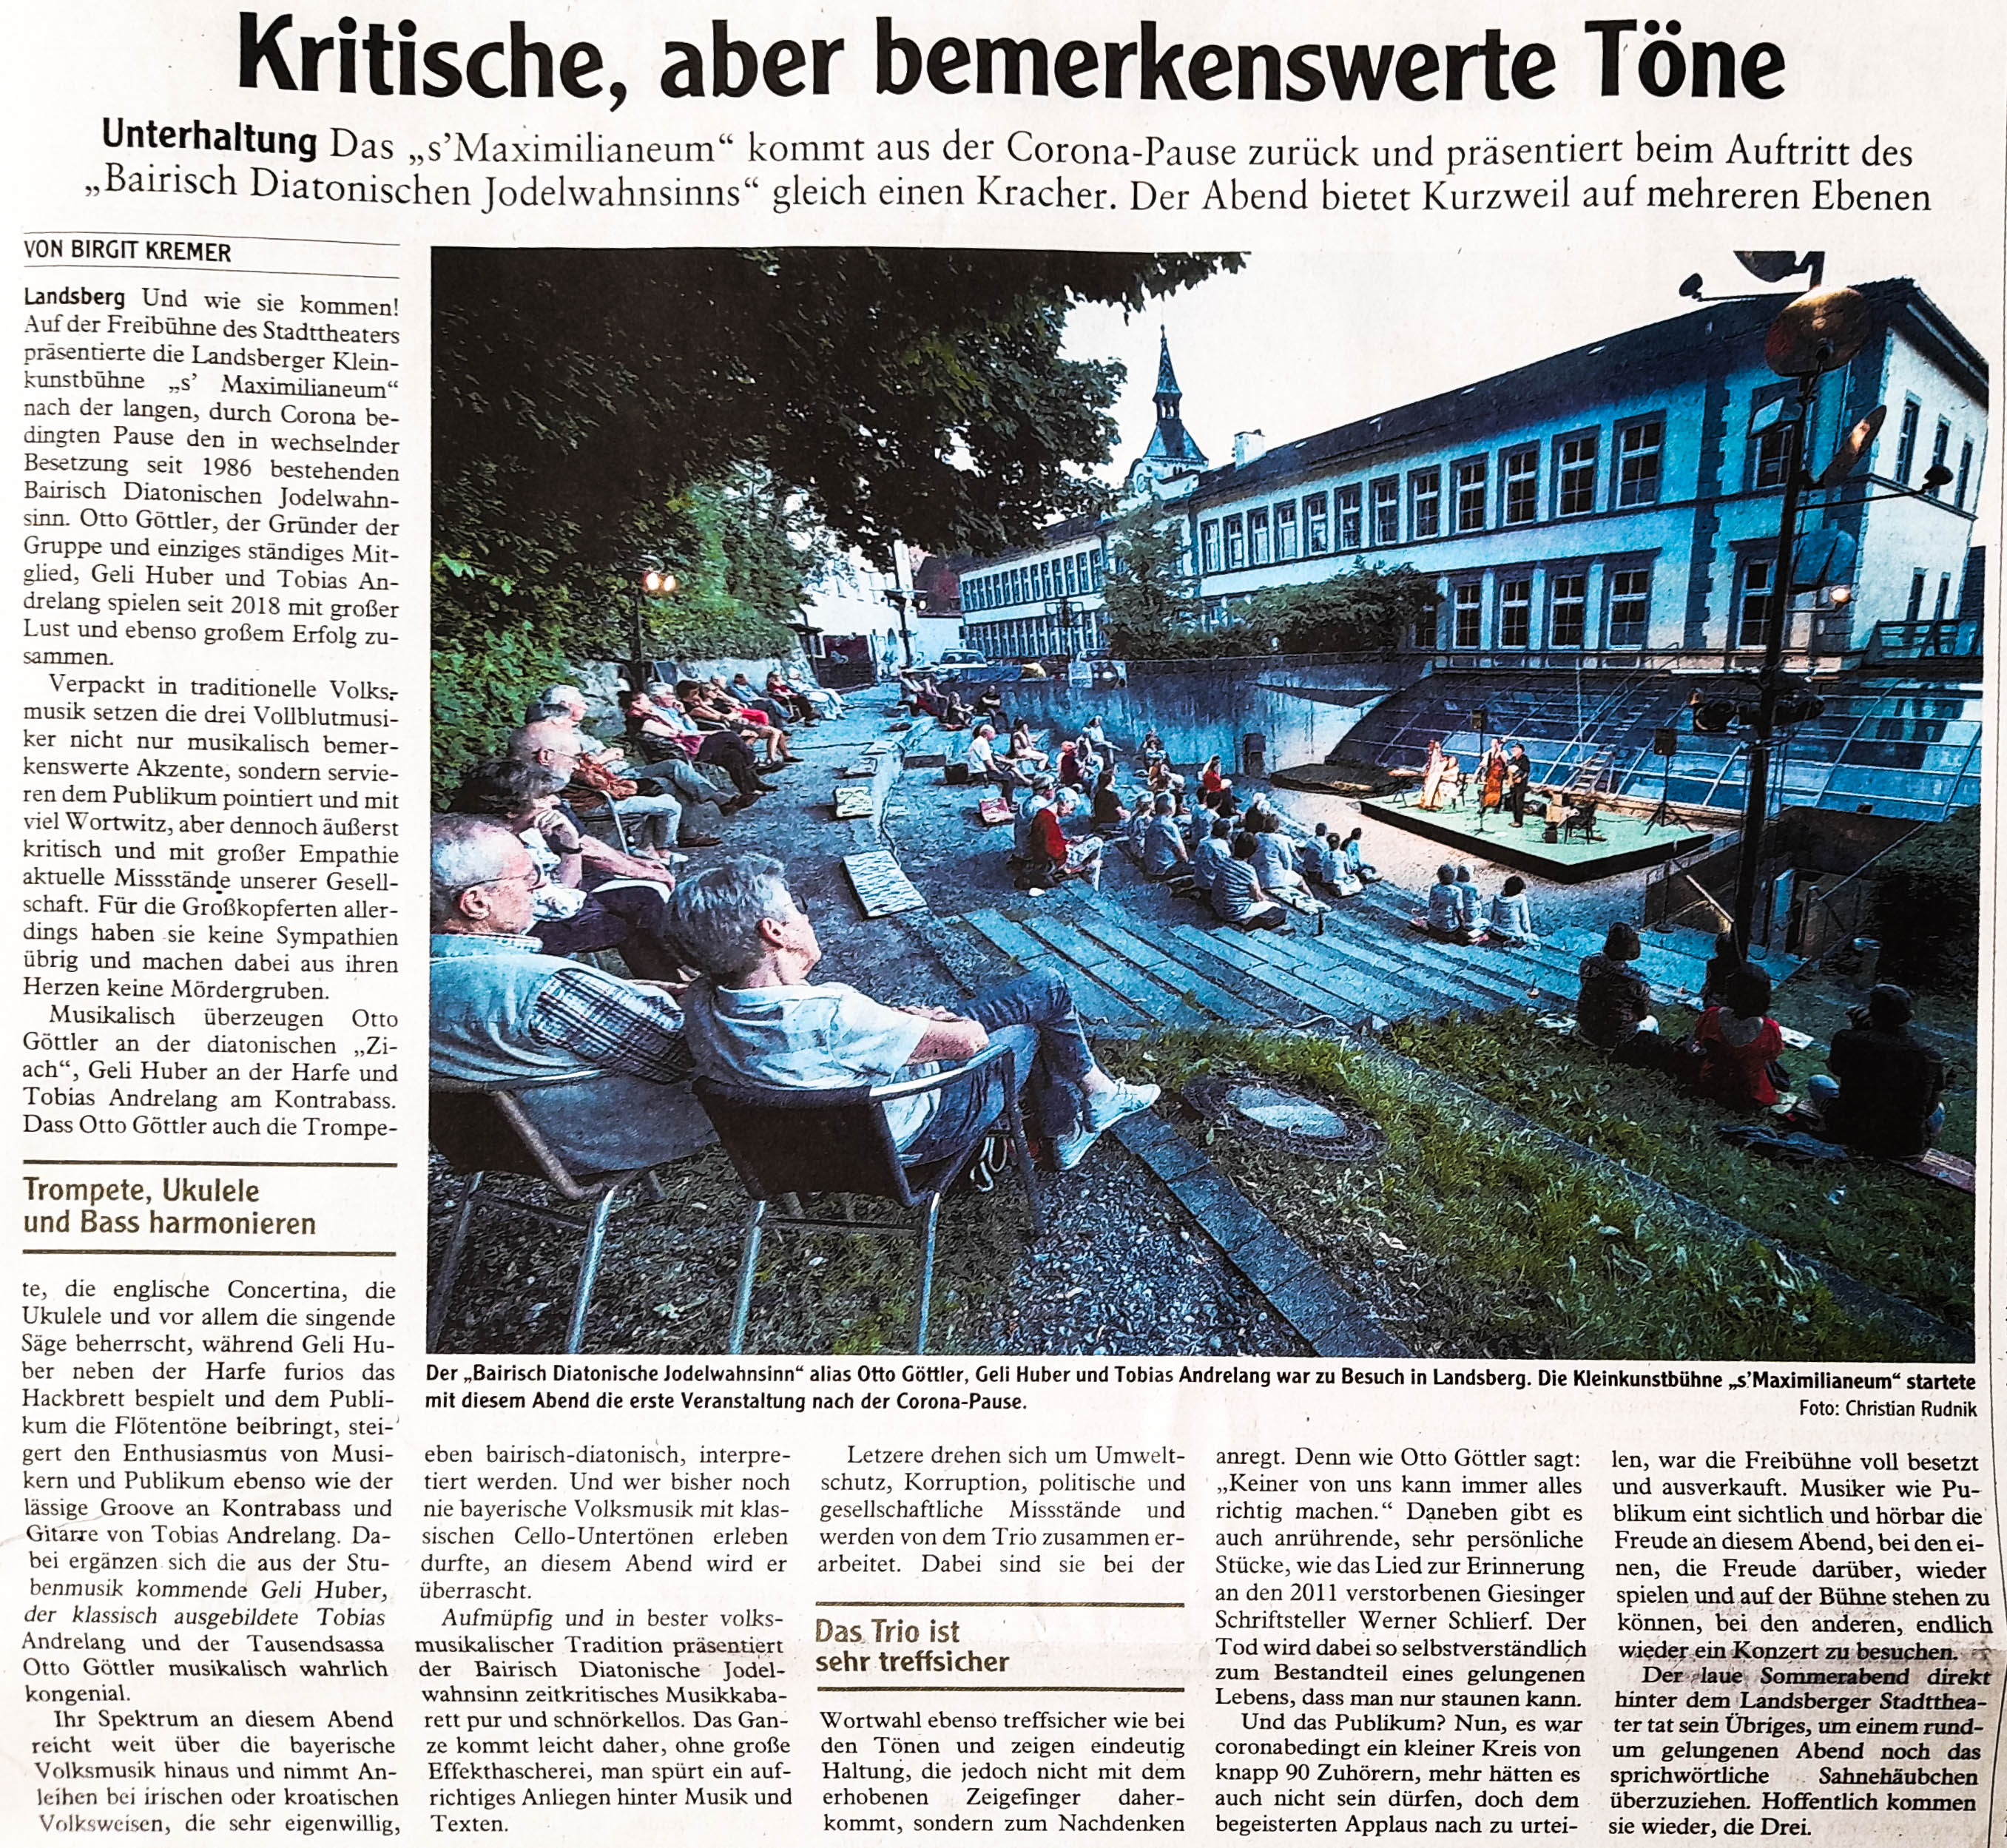 Bild der Kritik aus dem Landsberger Tagblatt vom 13.08.2020